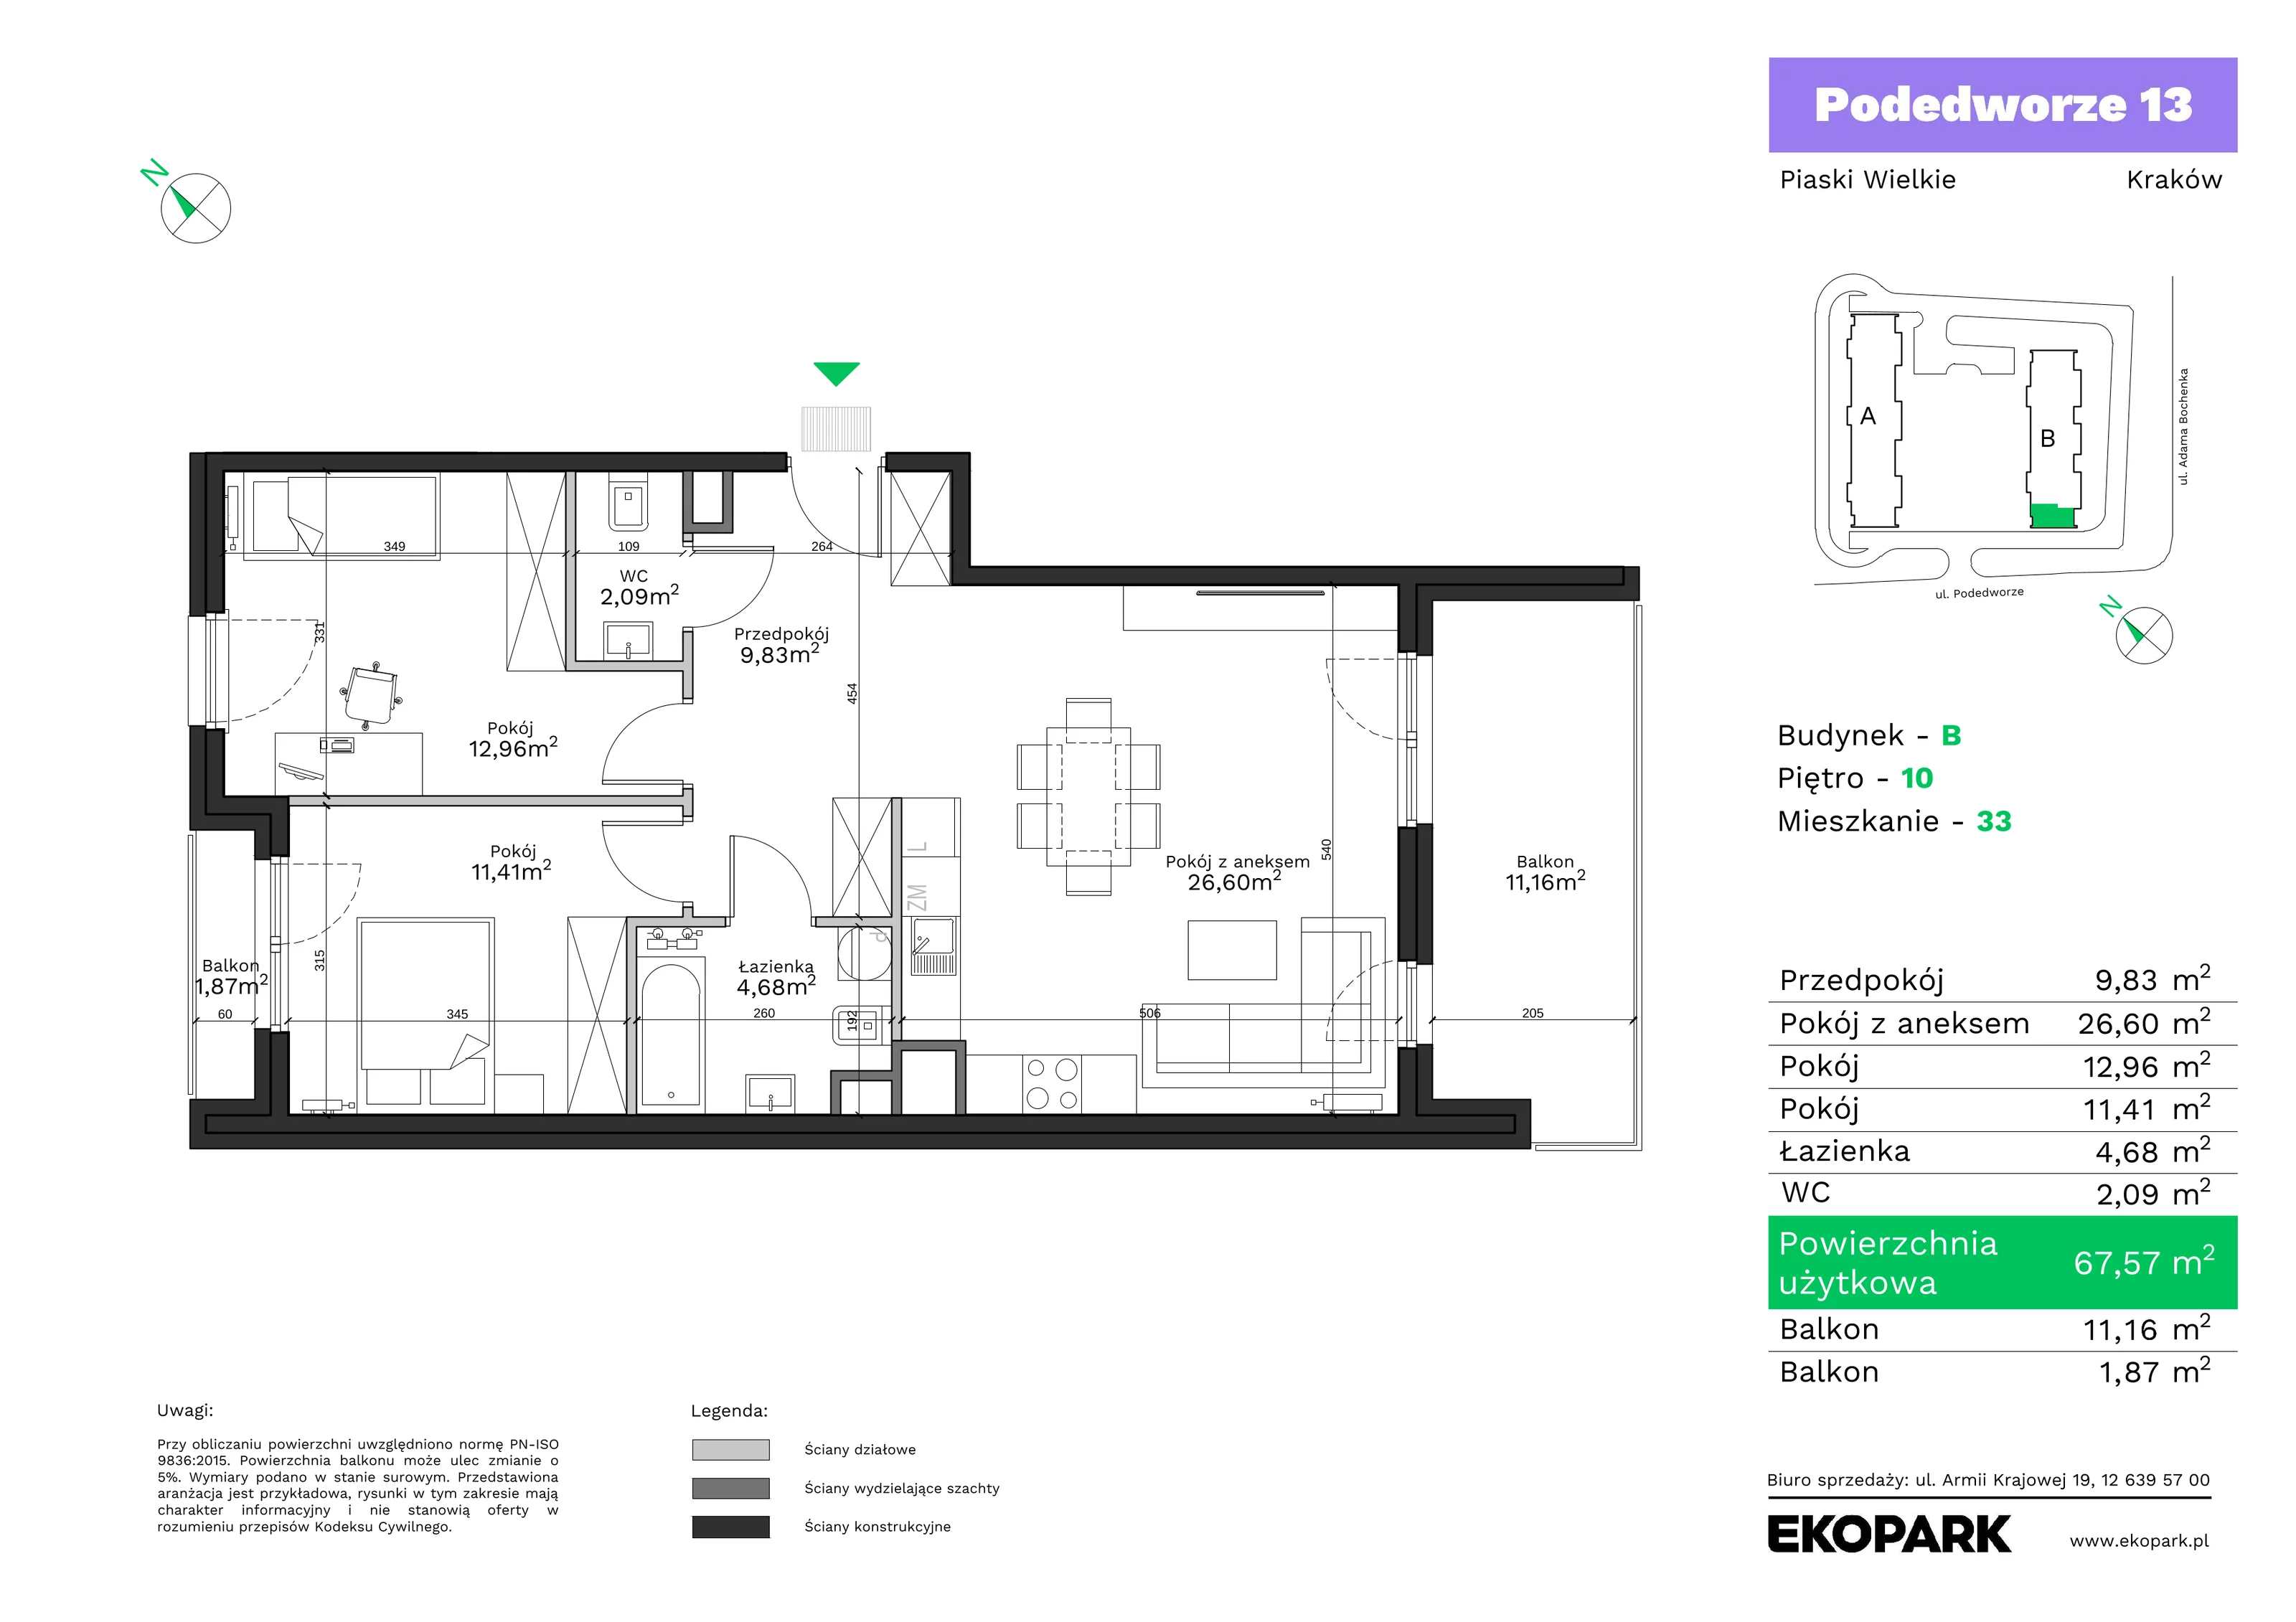 Mieszkanie 67,57 m², piętro 10, oferta nr B33, Podedworze 13, Kraków, Podgórze Duchackie, Piaski Wielkie, ul. Podedworze 13